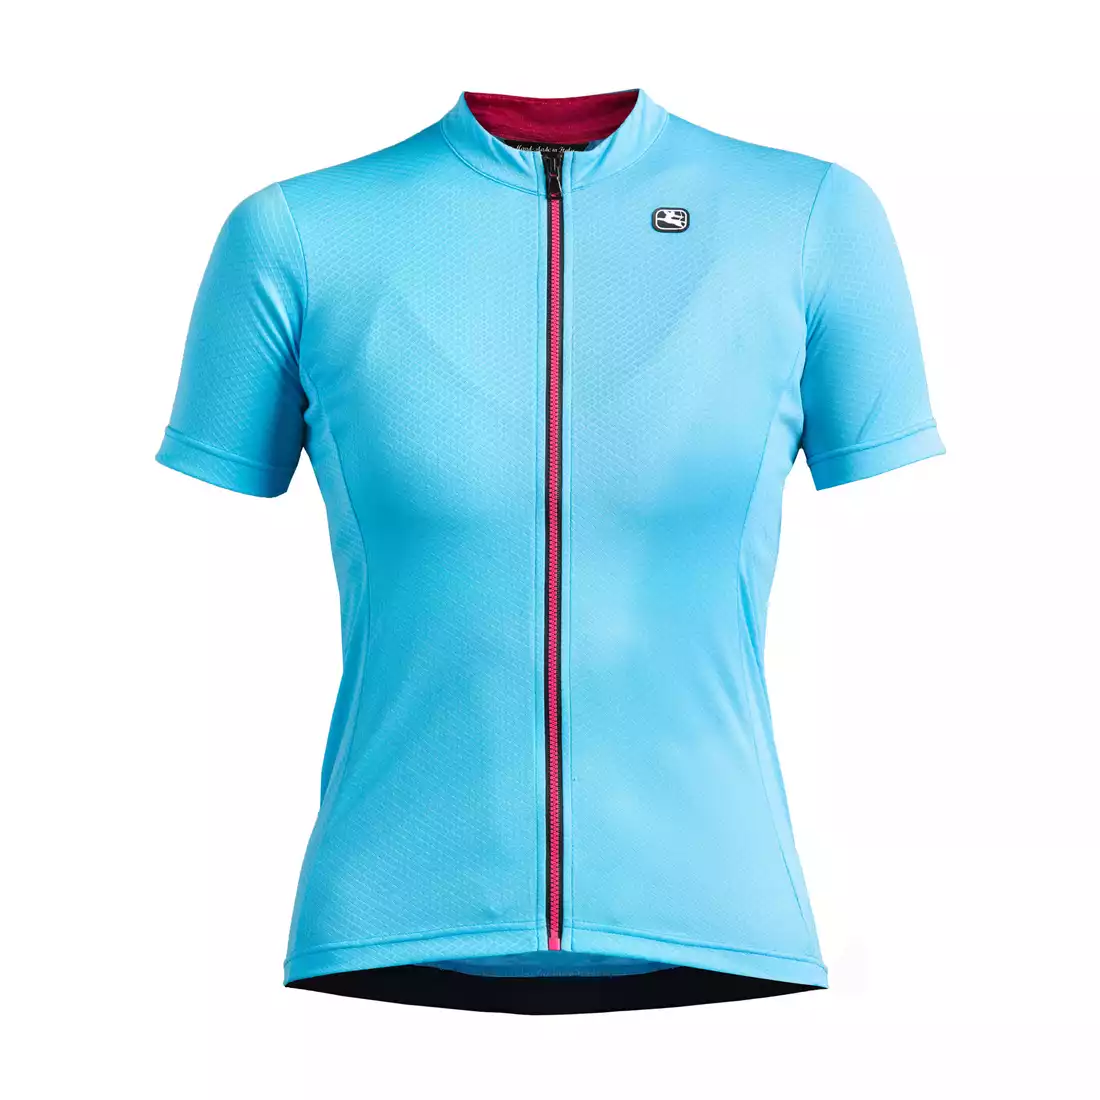 GIORDANA FUSION damska koszulka rowerowa niebieska